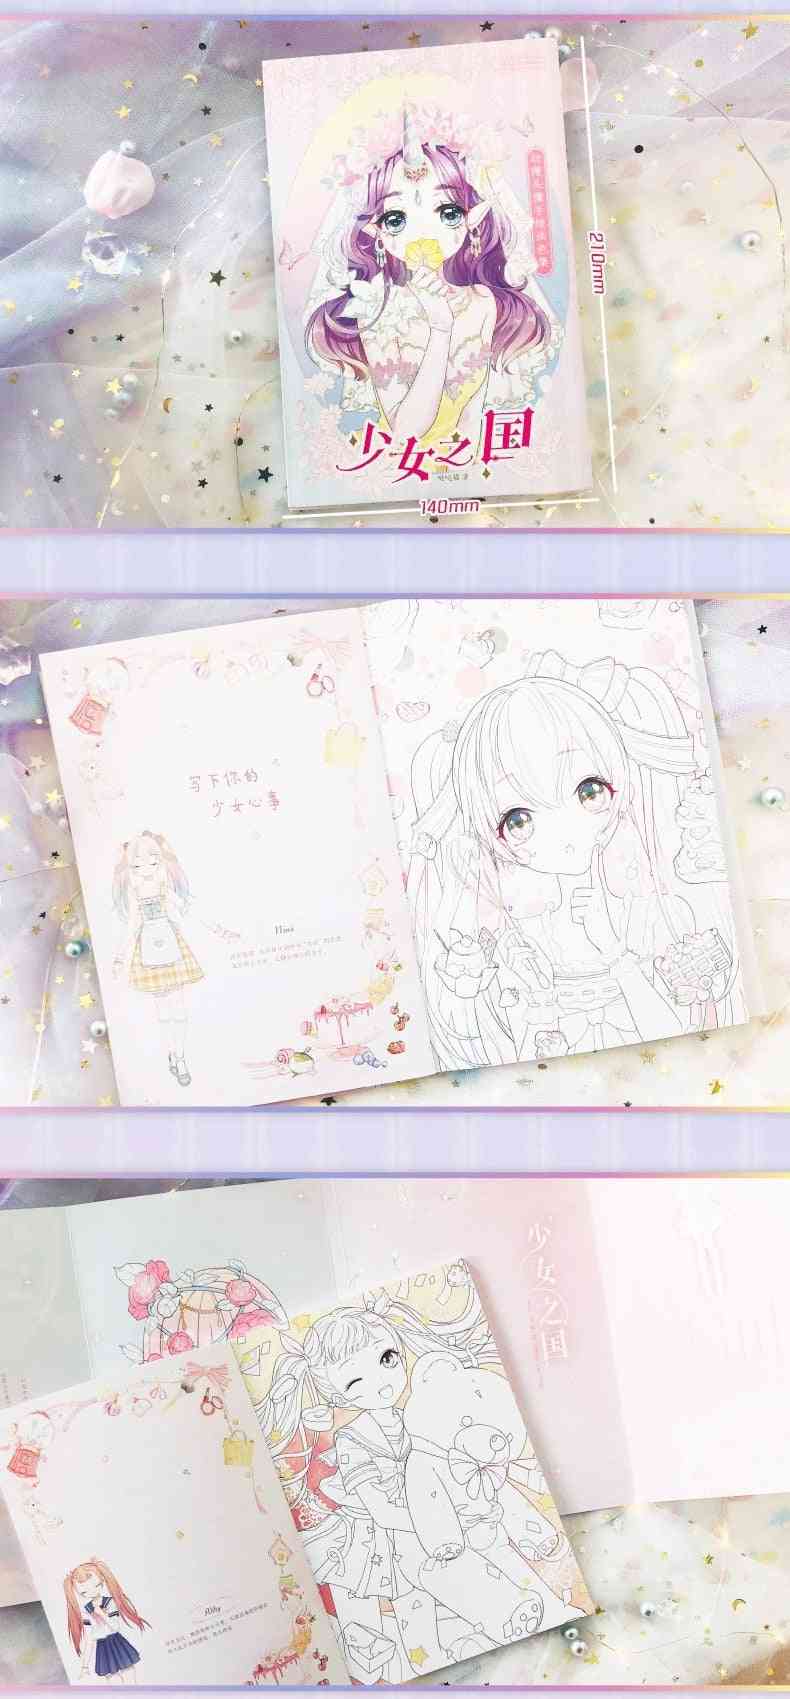 Het koninkrijk van anime, avatar met de hand getekend, kleurboek